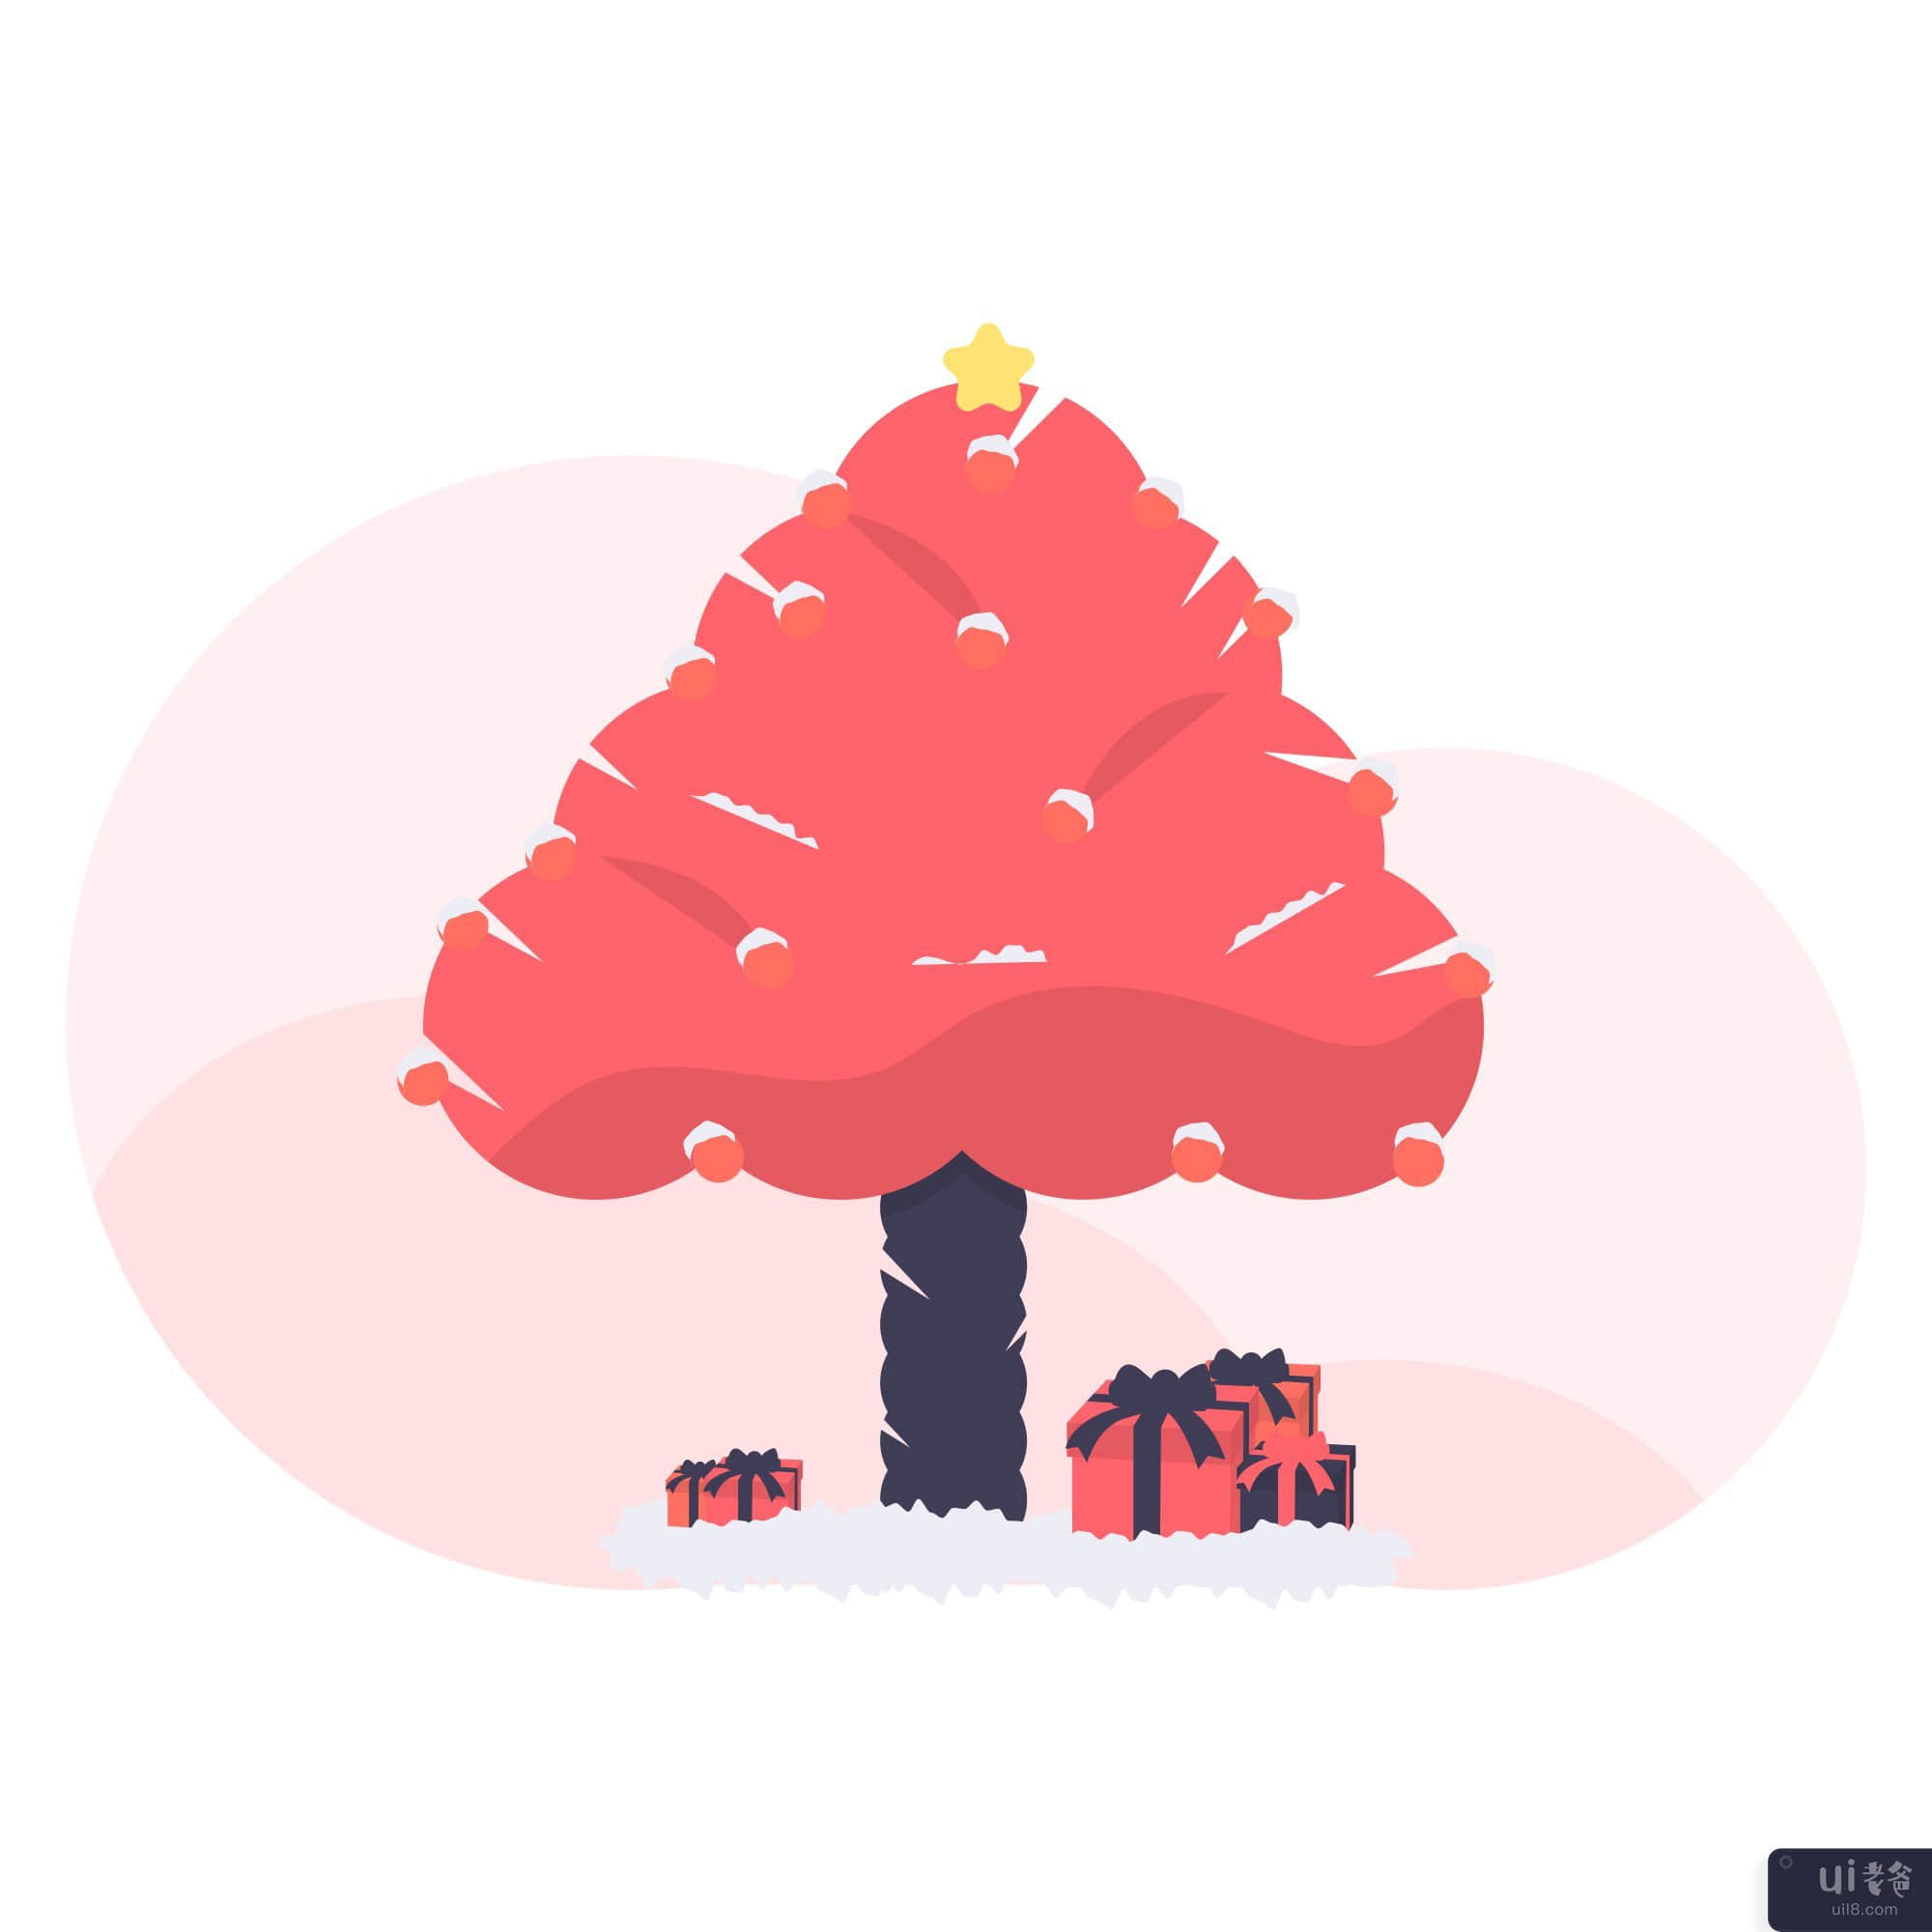 圣诞树图(Christmas tree illustration)插图2